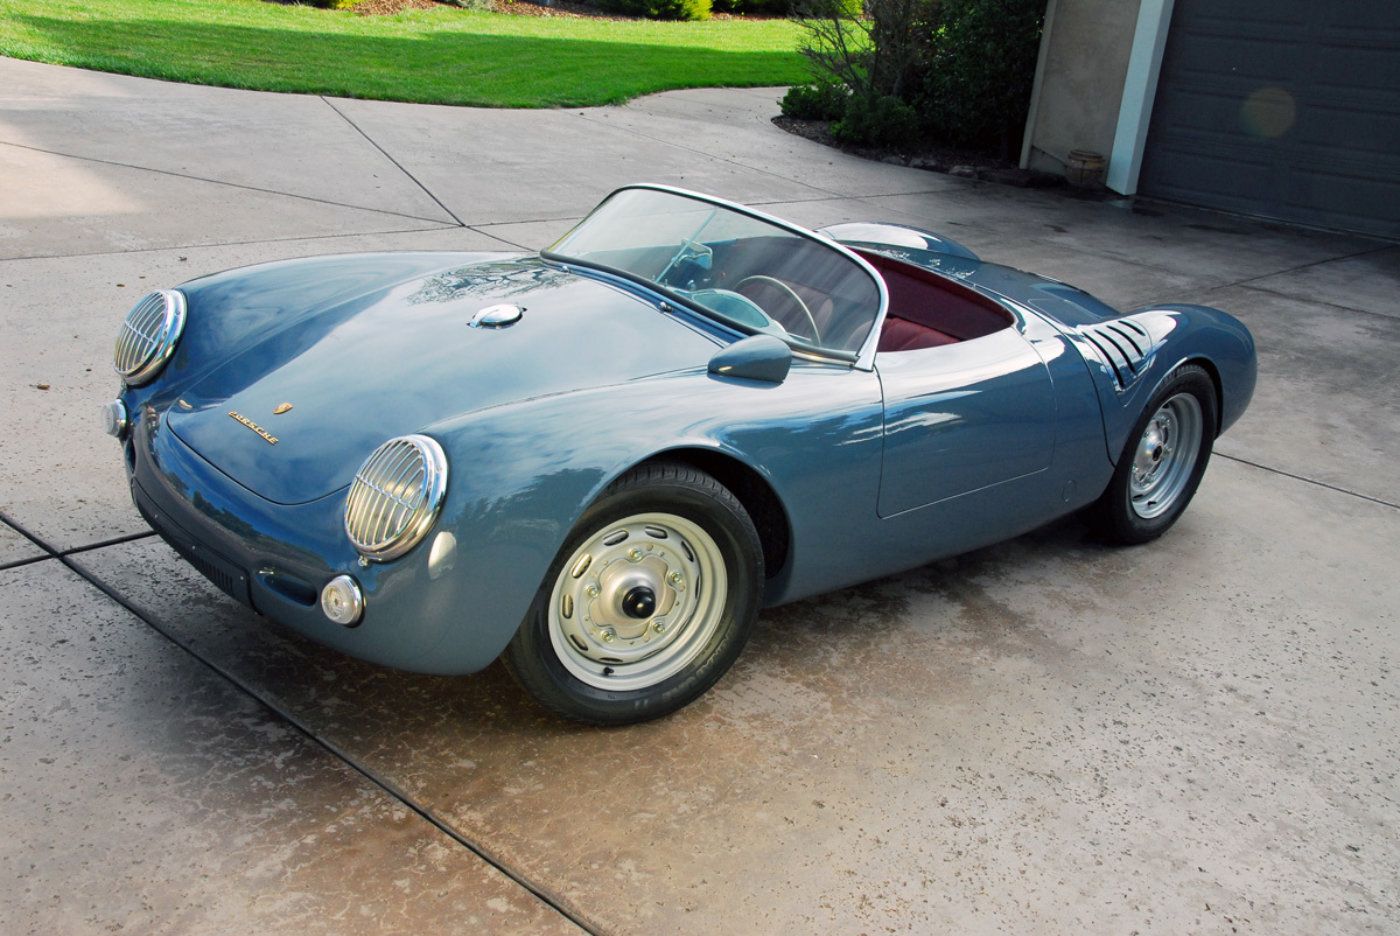 1955 Porsche 550 Spyder parked outside